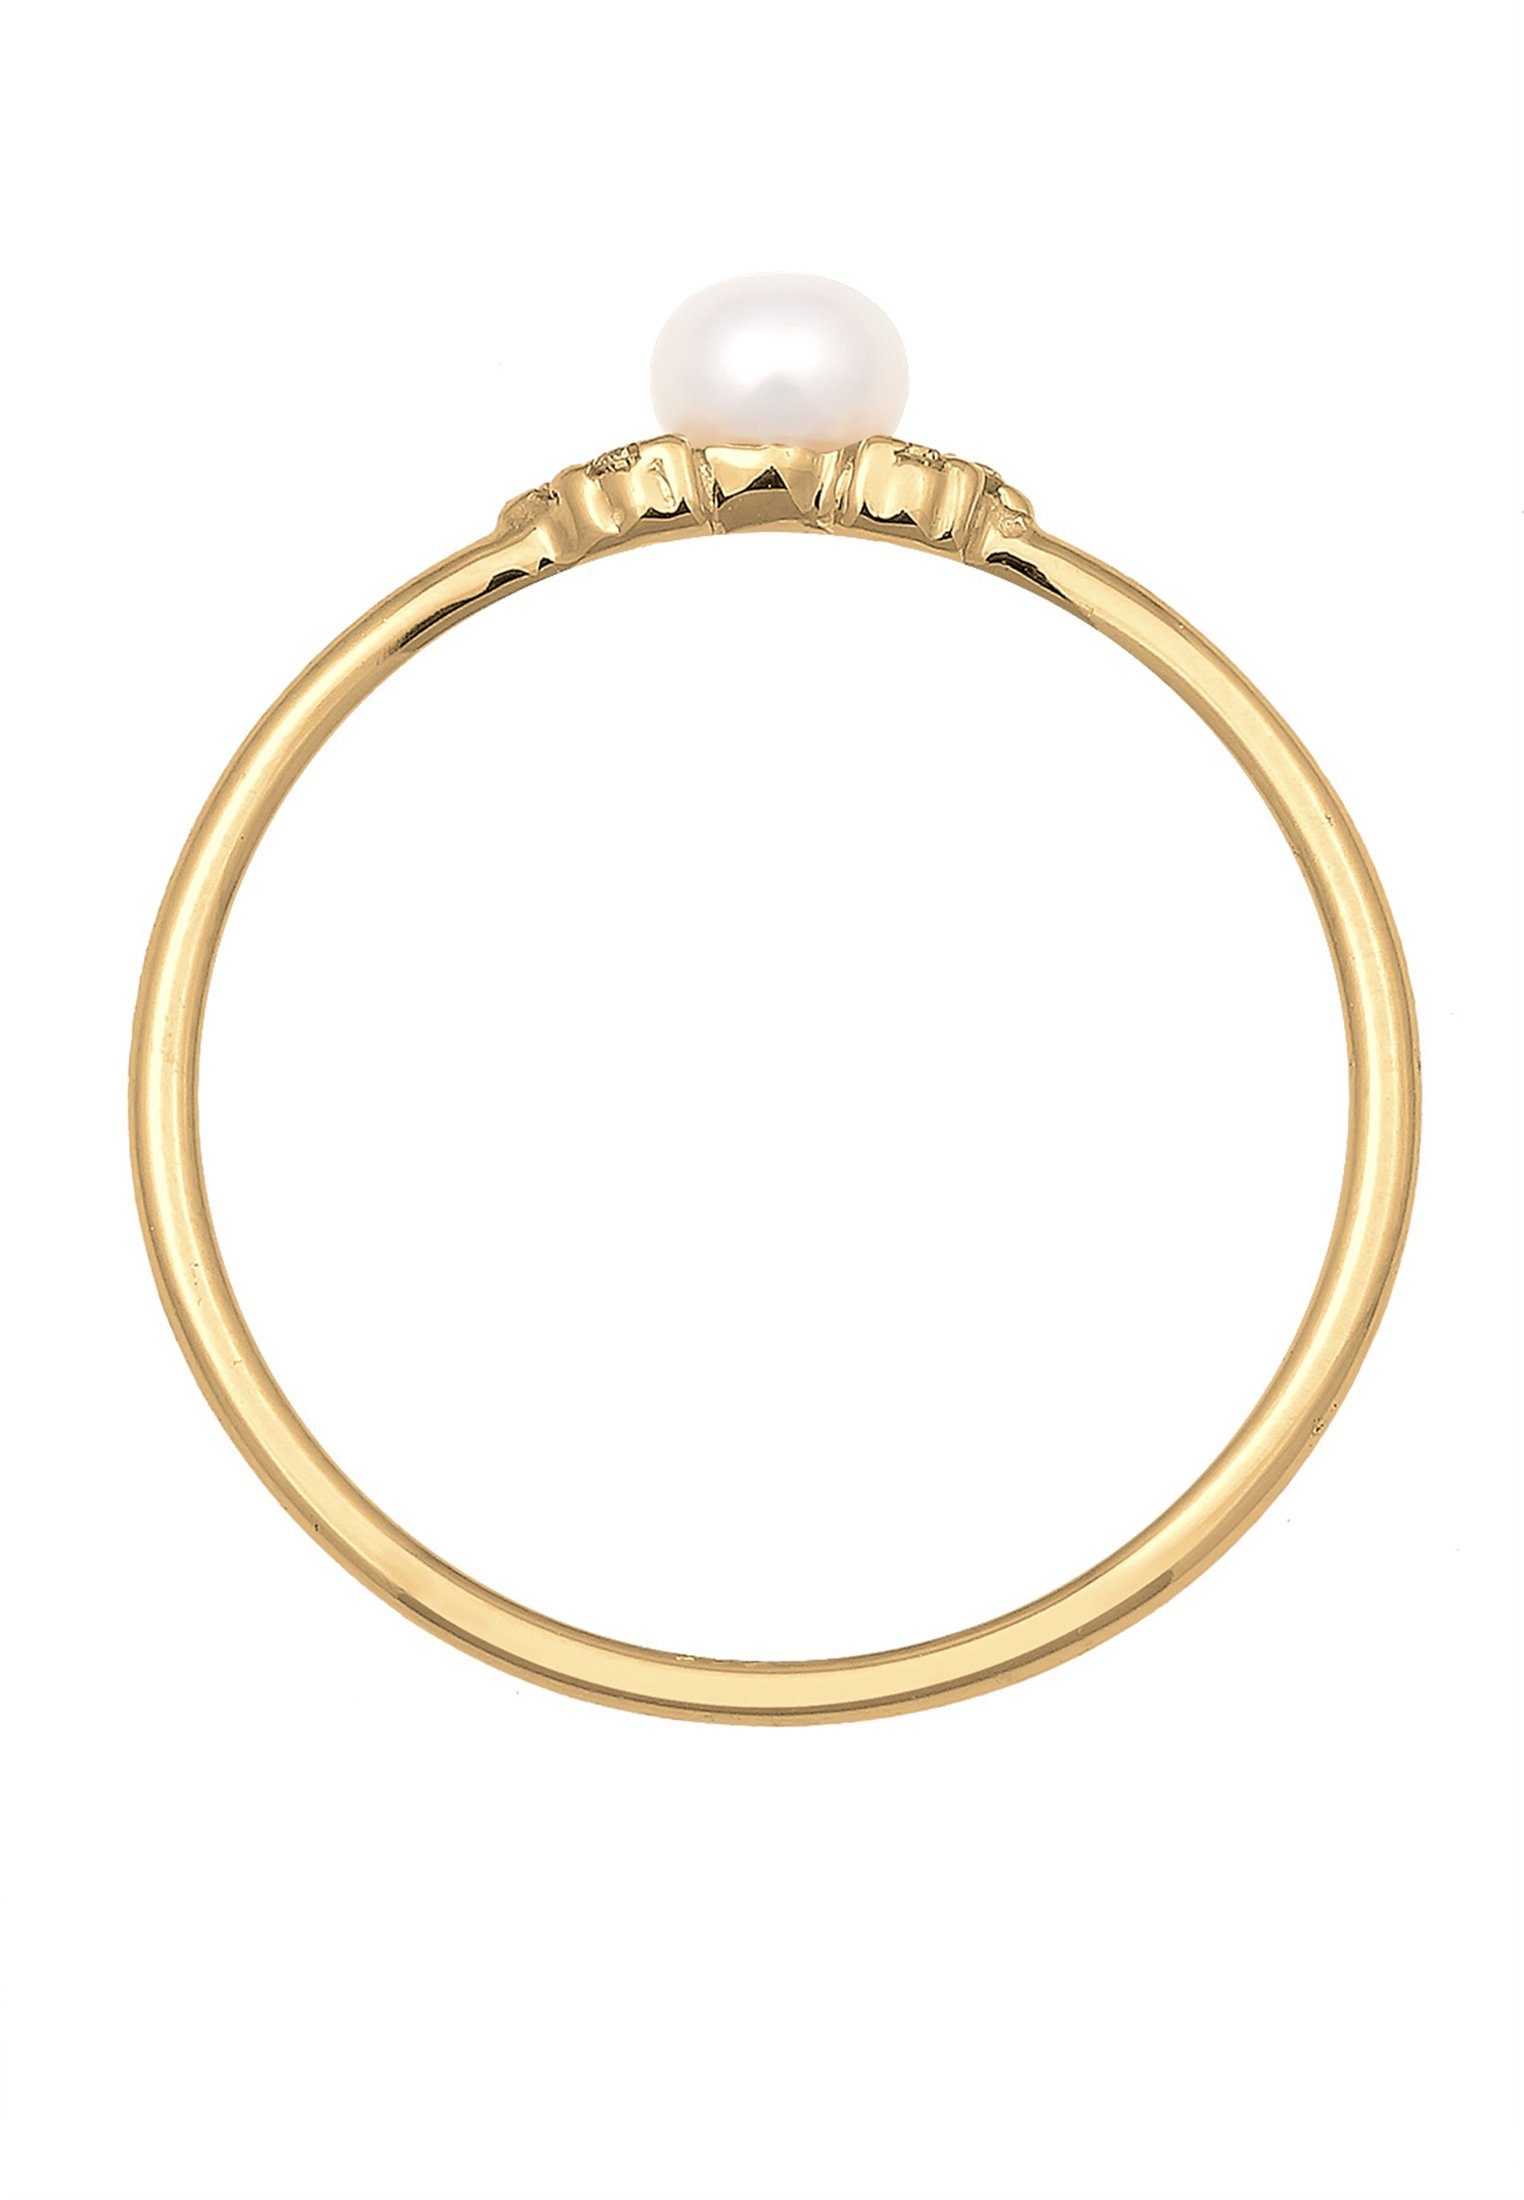 Gelbgold Elli 585 Verlobungsring Diamant Verlobung Perle (0.03 ct) DIAMONDS